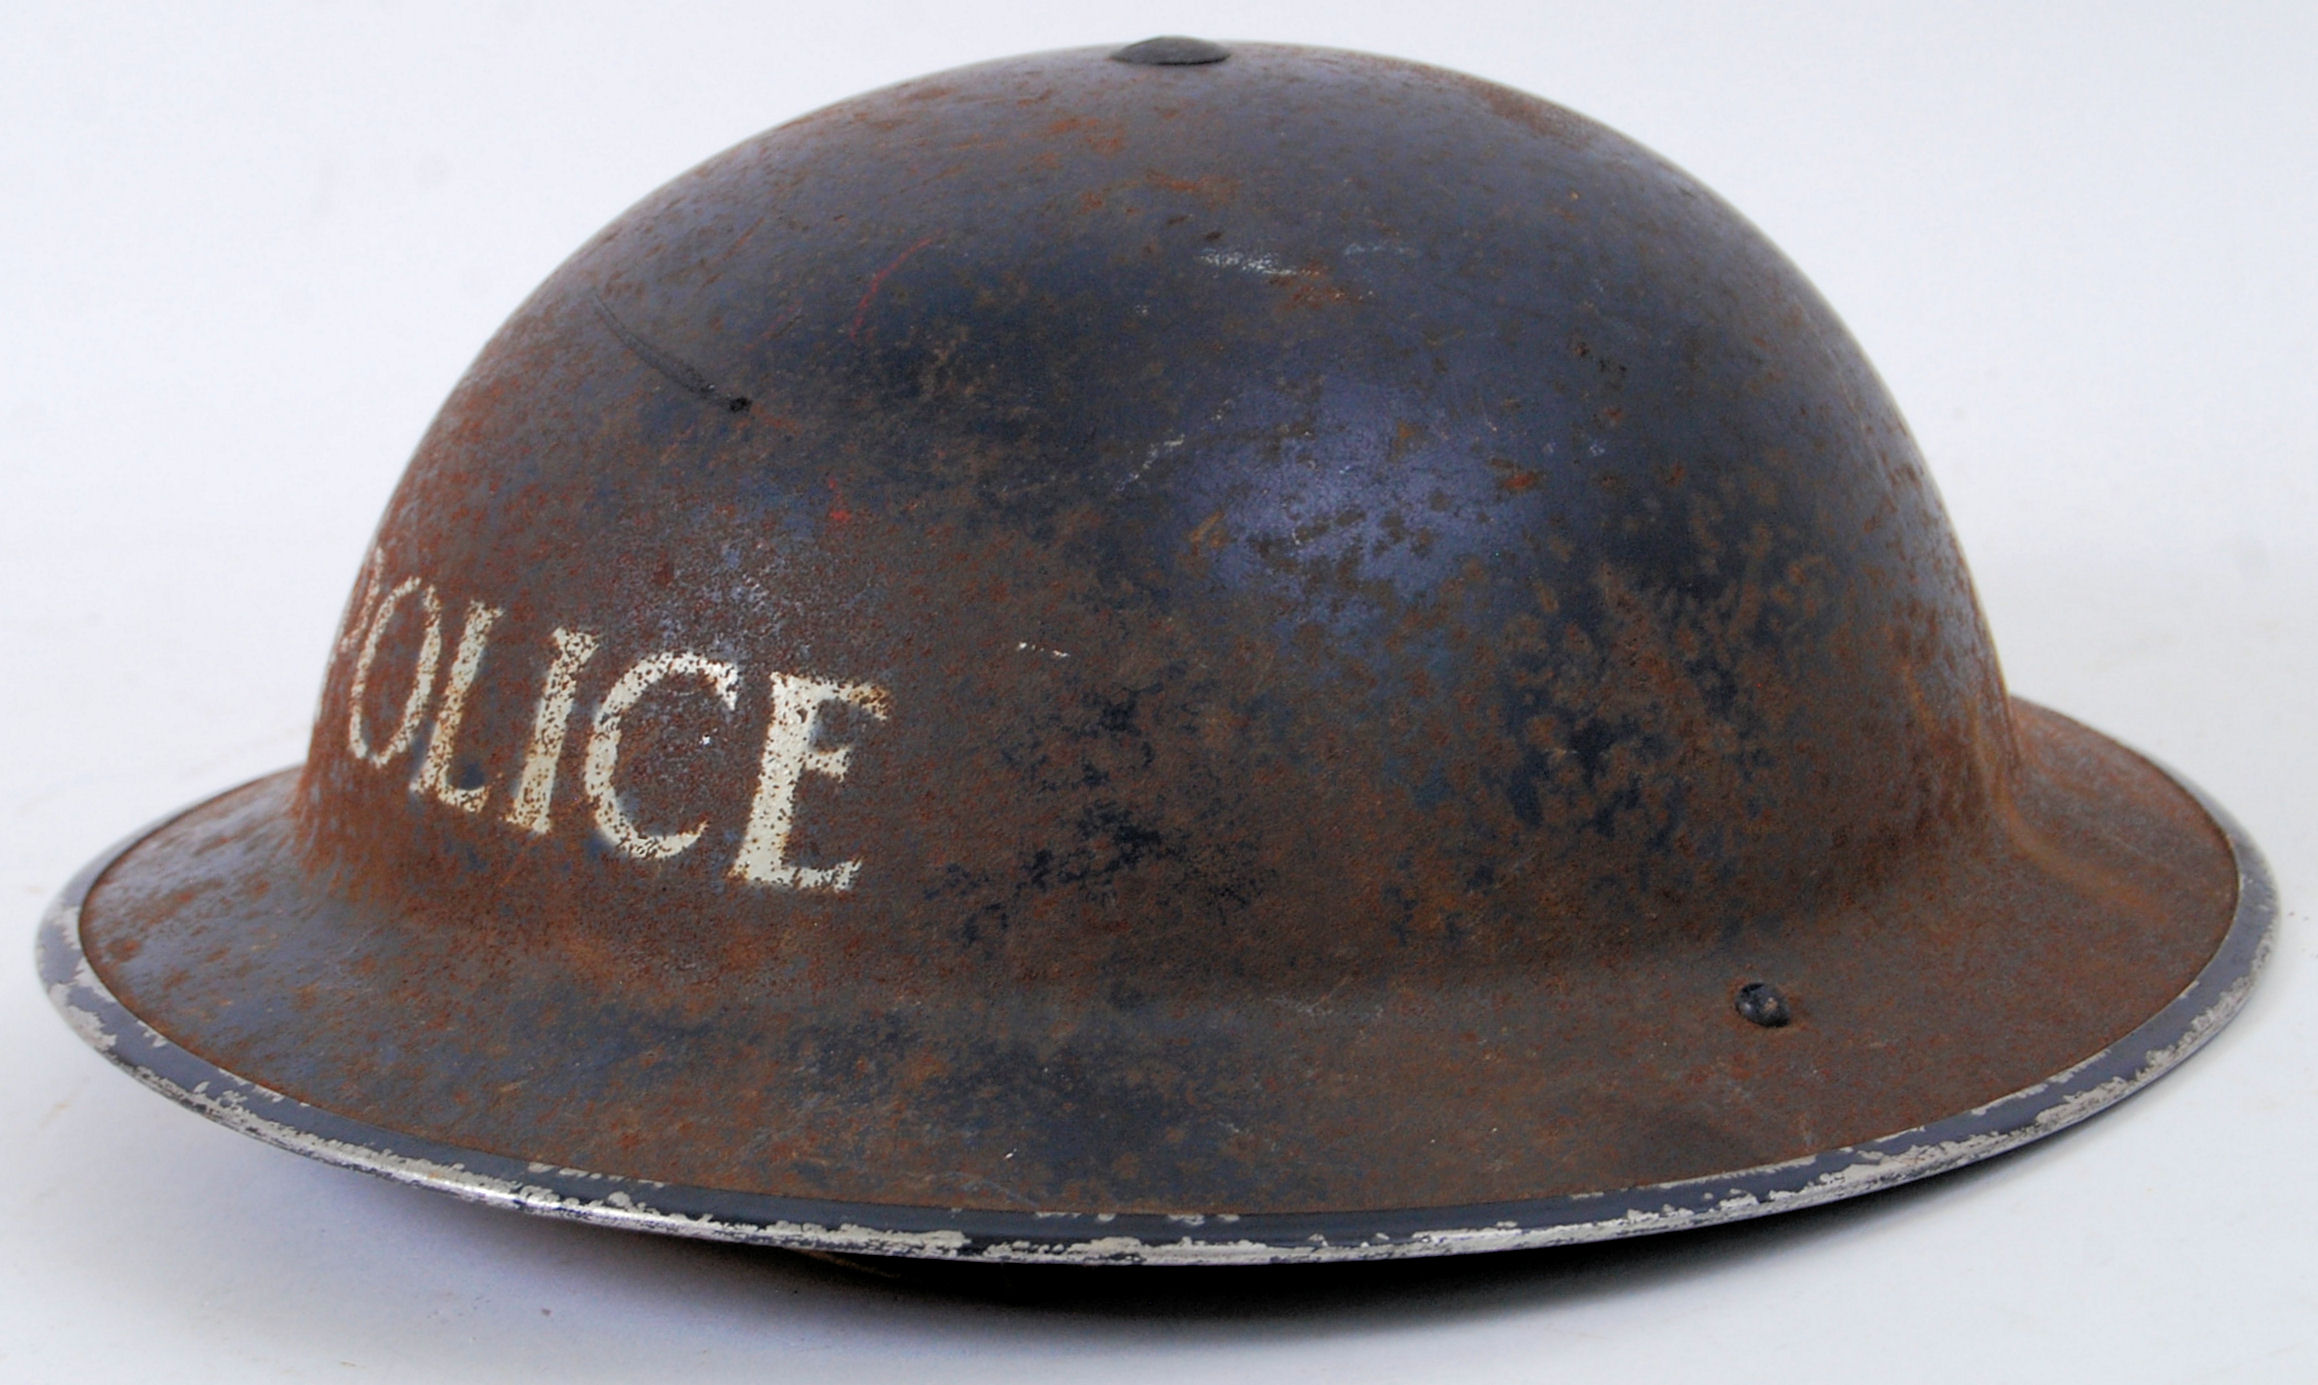 POLICE HELMET: A WWII Second World War era British Police tin helmet,